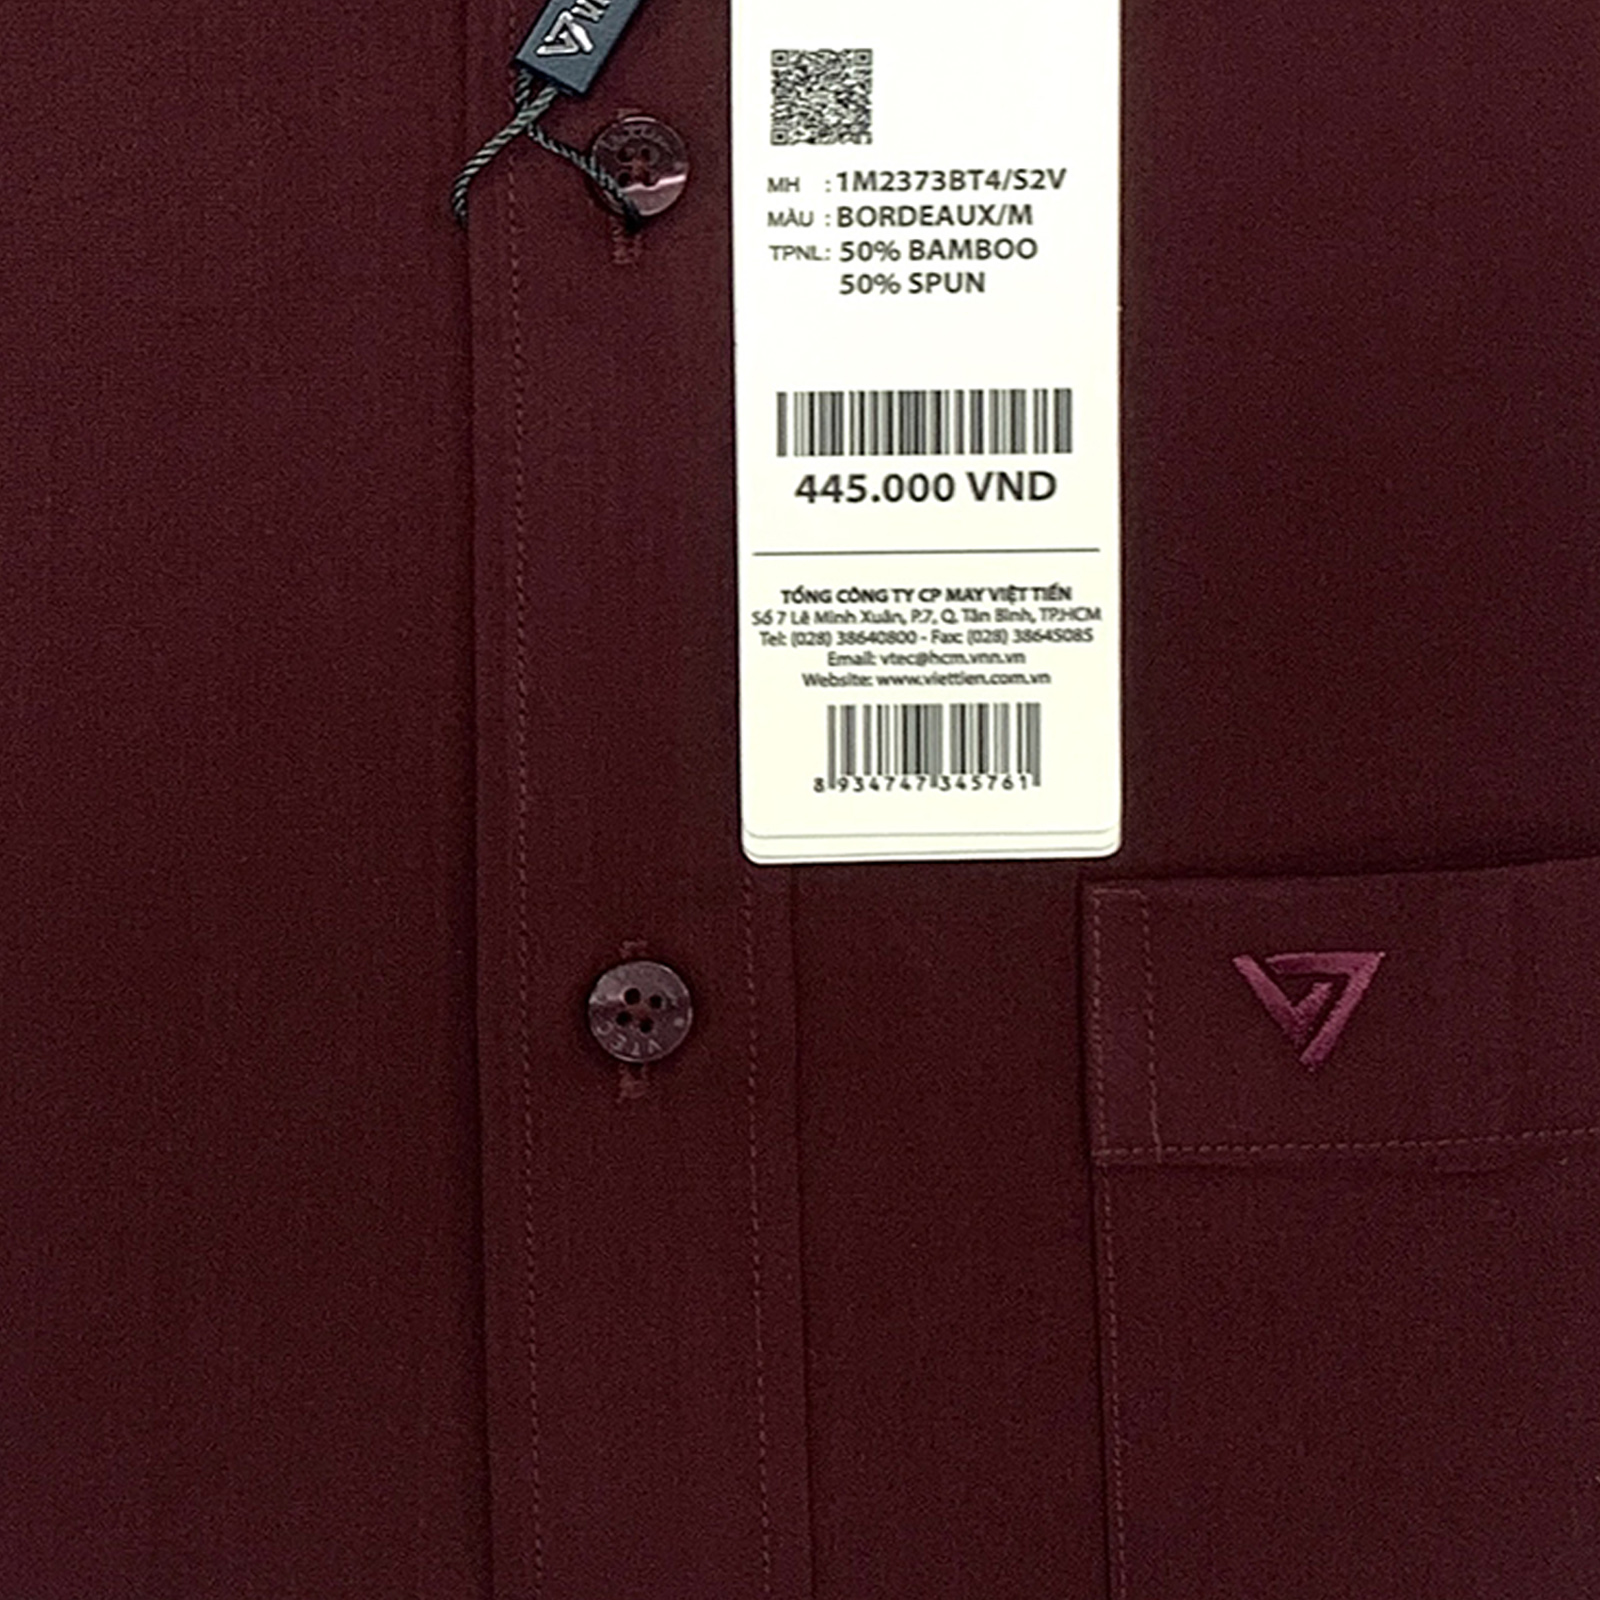 Viettien - Áo sơ mi nam ngắn tay vạt bầu màu đô 1M2373 regular